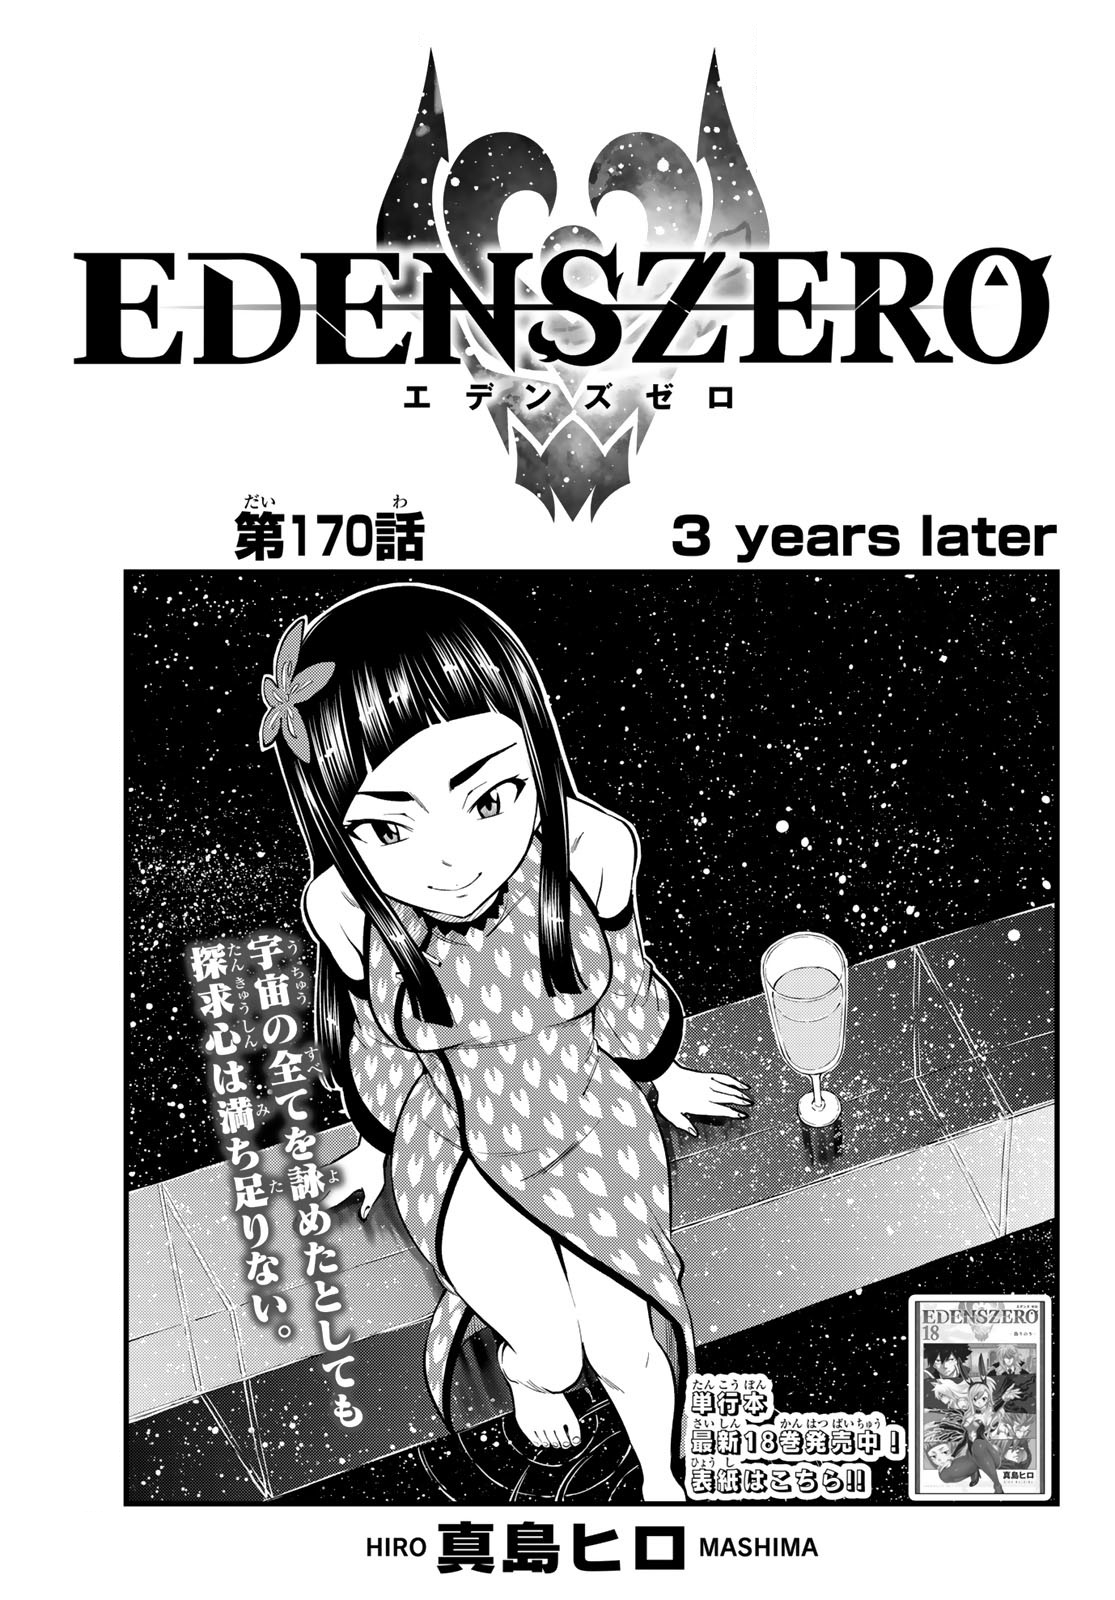 Xiaomei, Edens Zero Wiki, Fandom